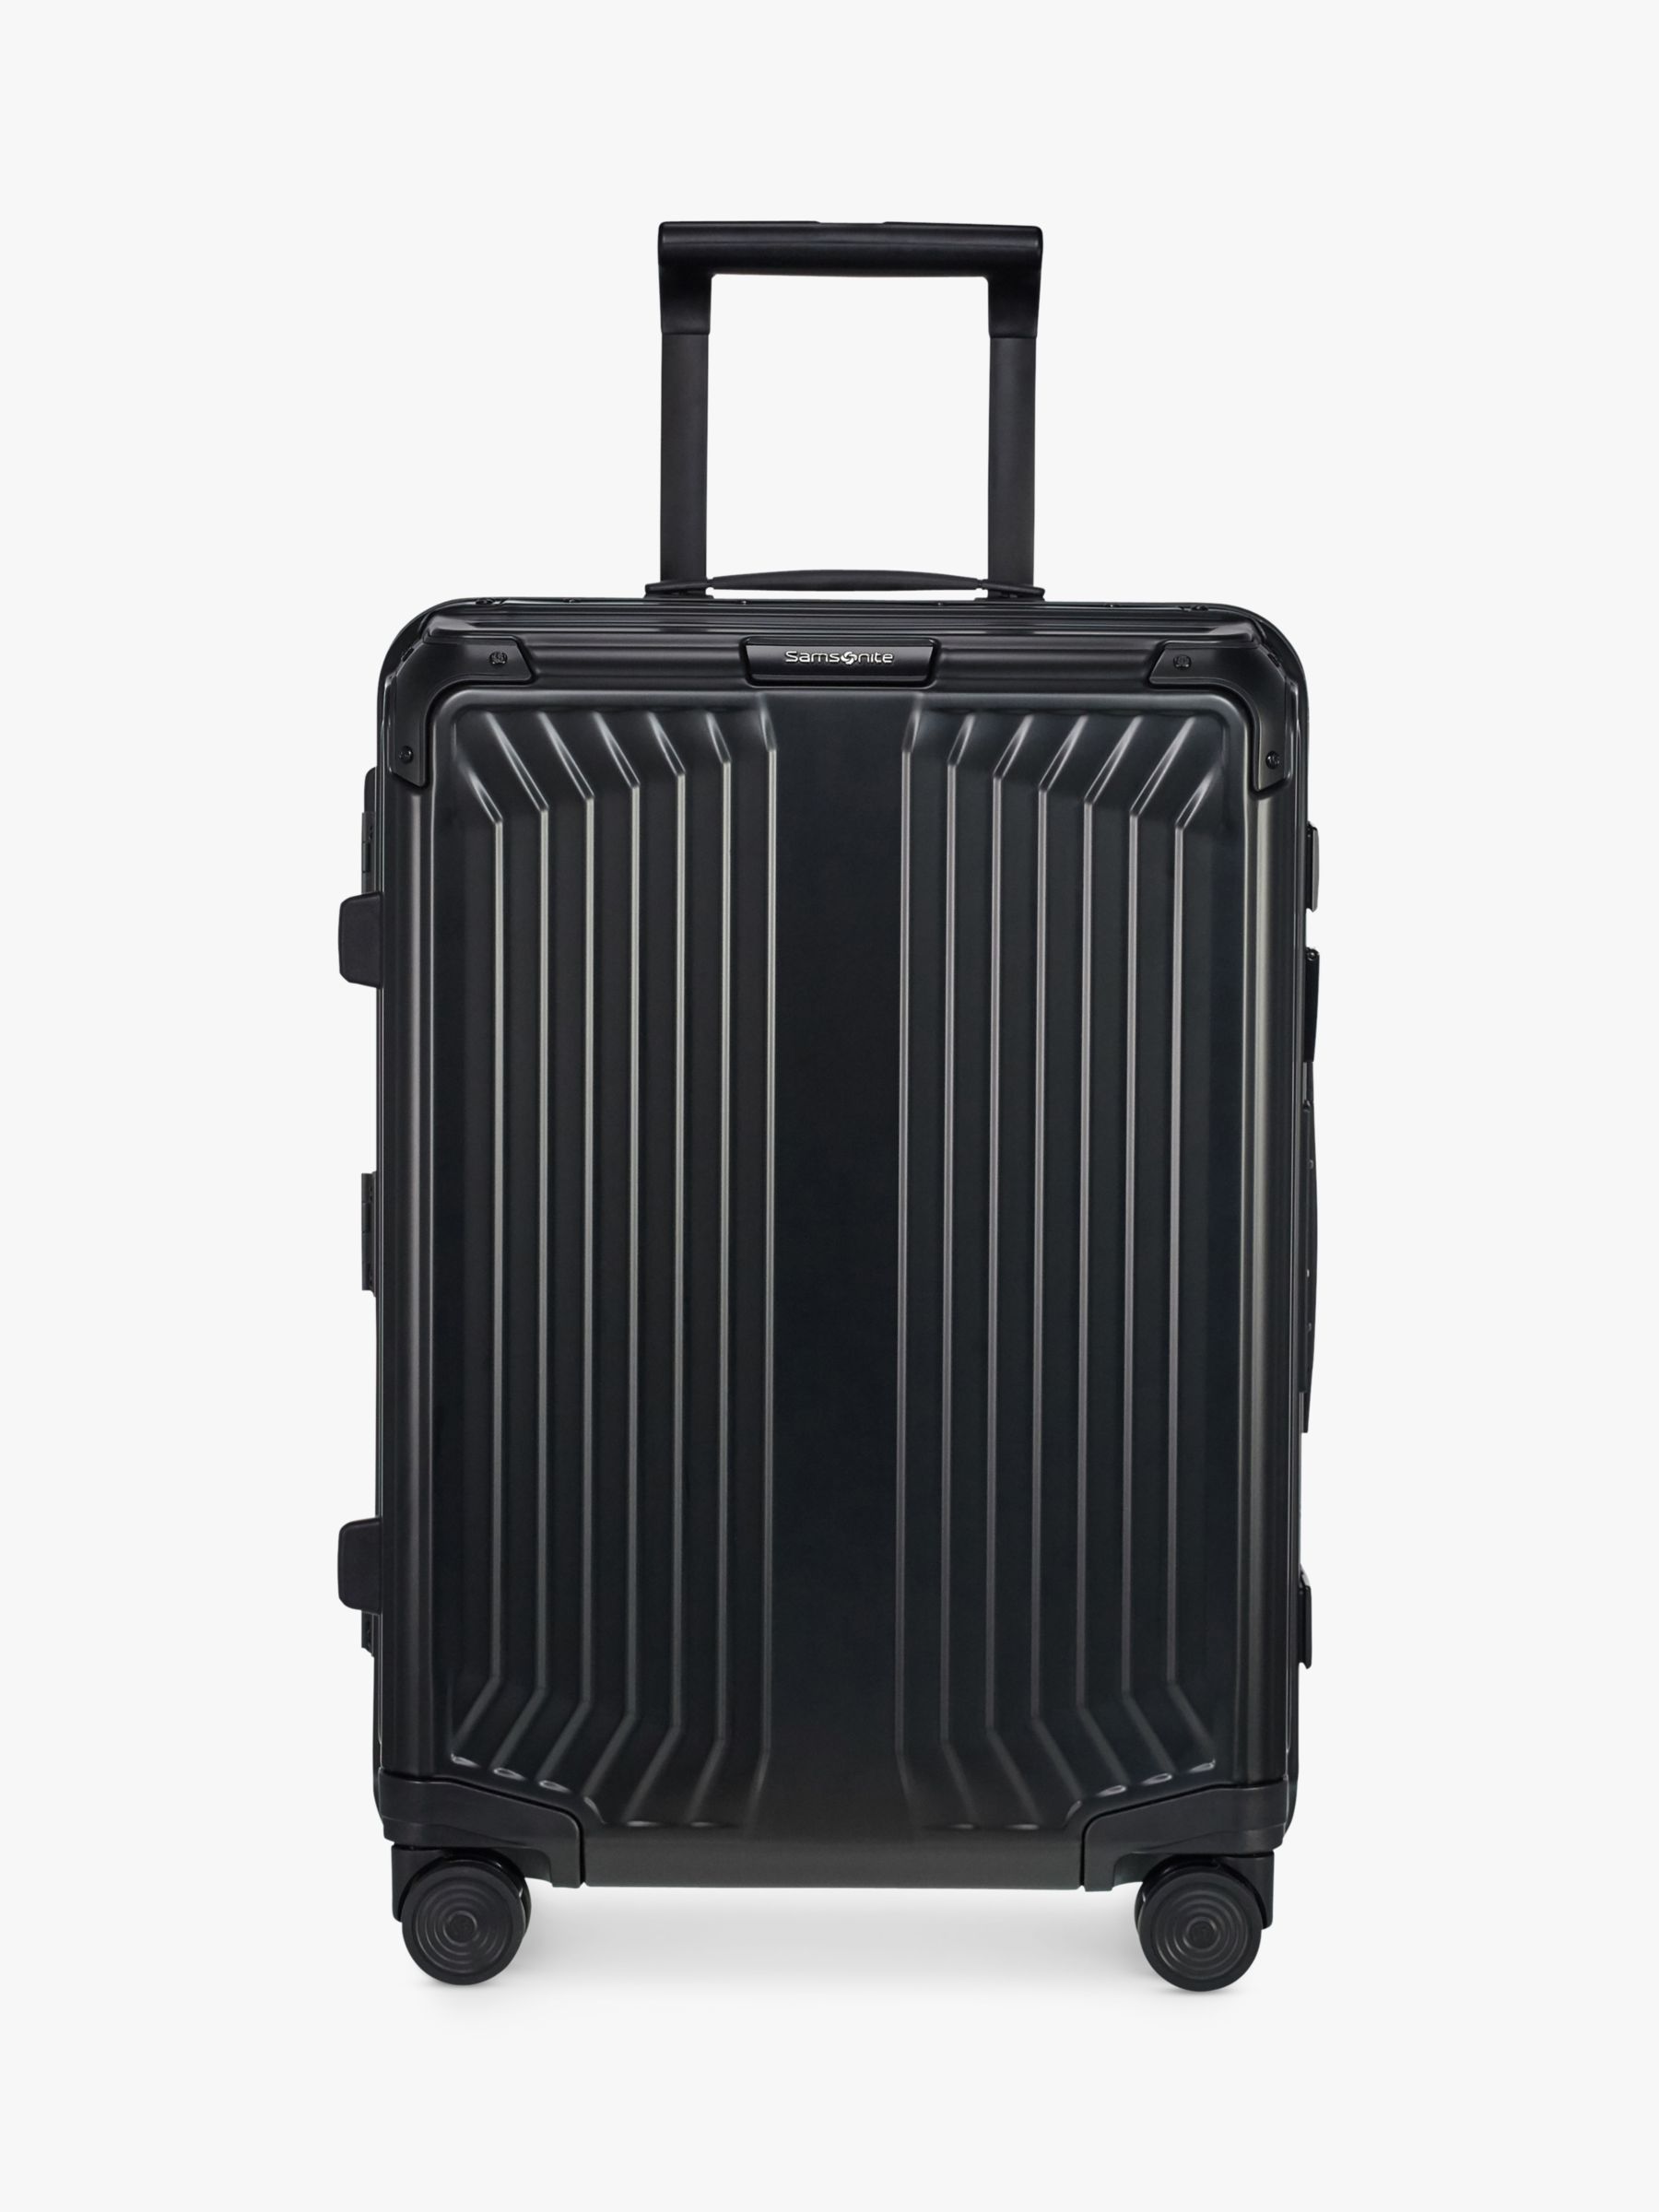 Samsonite Lite-Box 55cm 4-Spinner Wheel Aluminium Suitcase, Black